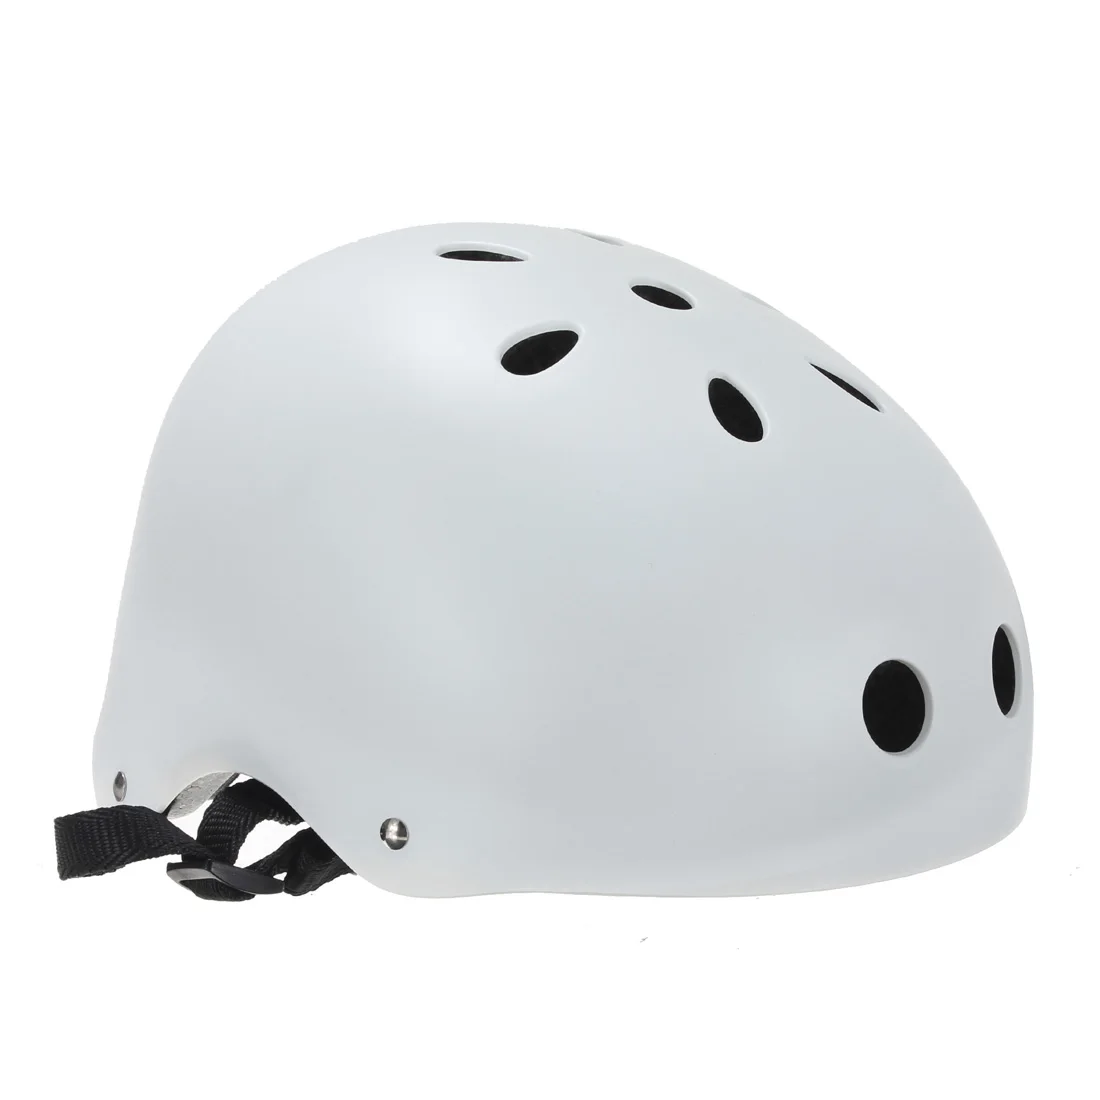 SFR велосипед ролик для скутера Дерби встроенный скейтборд BMX M Размер шлем